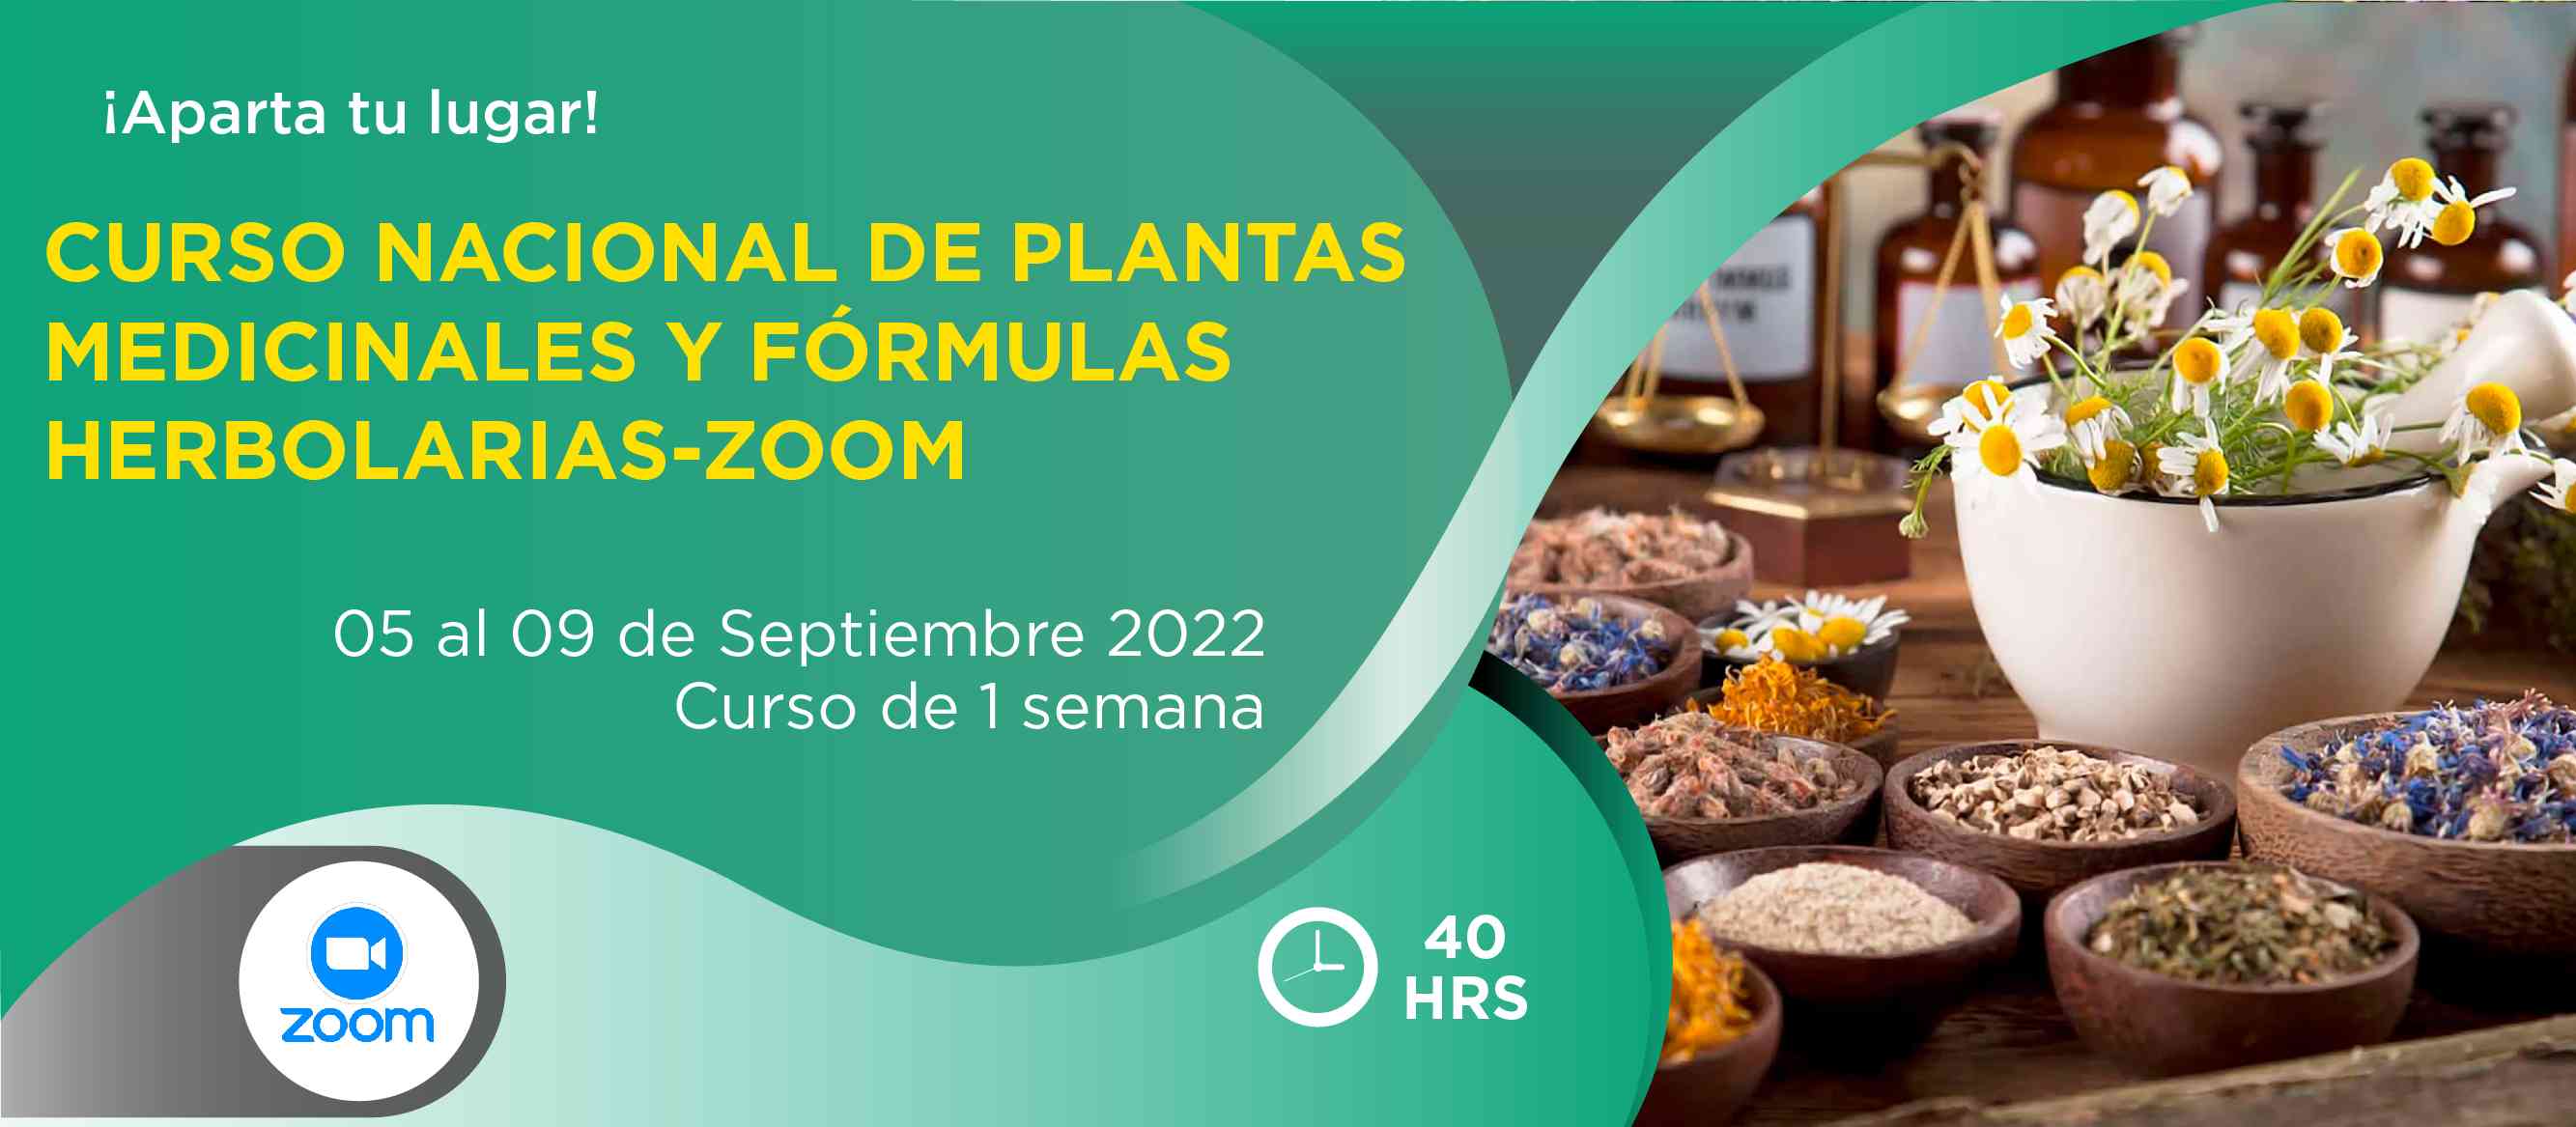 Banner para el curso de CURSO NACIONAL DE PLANTAS MEDICINALES Y FÓRMULAS HERBOLARIAS-ZOOM>